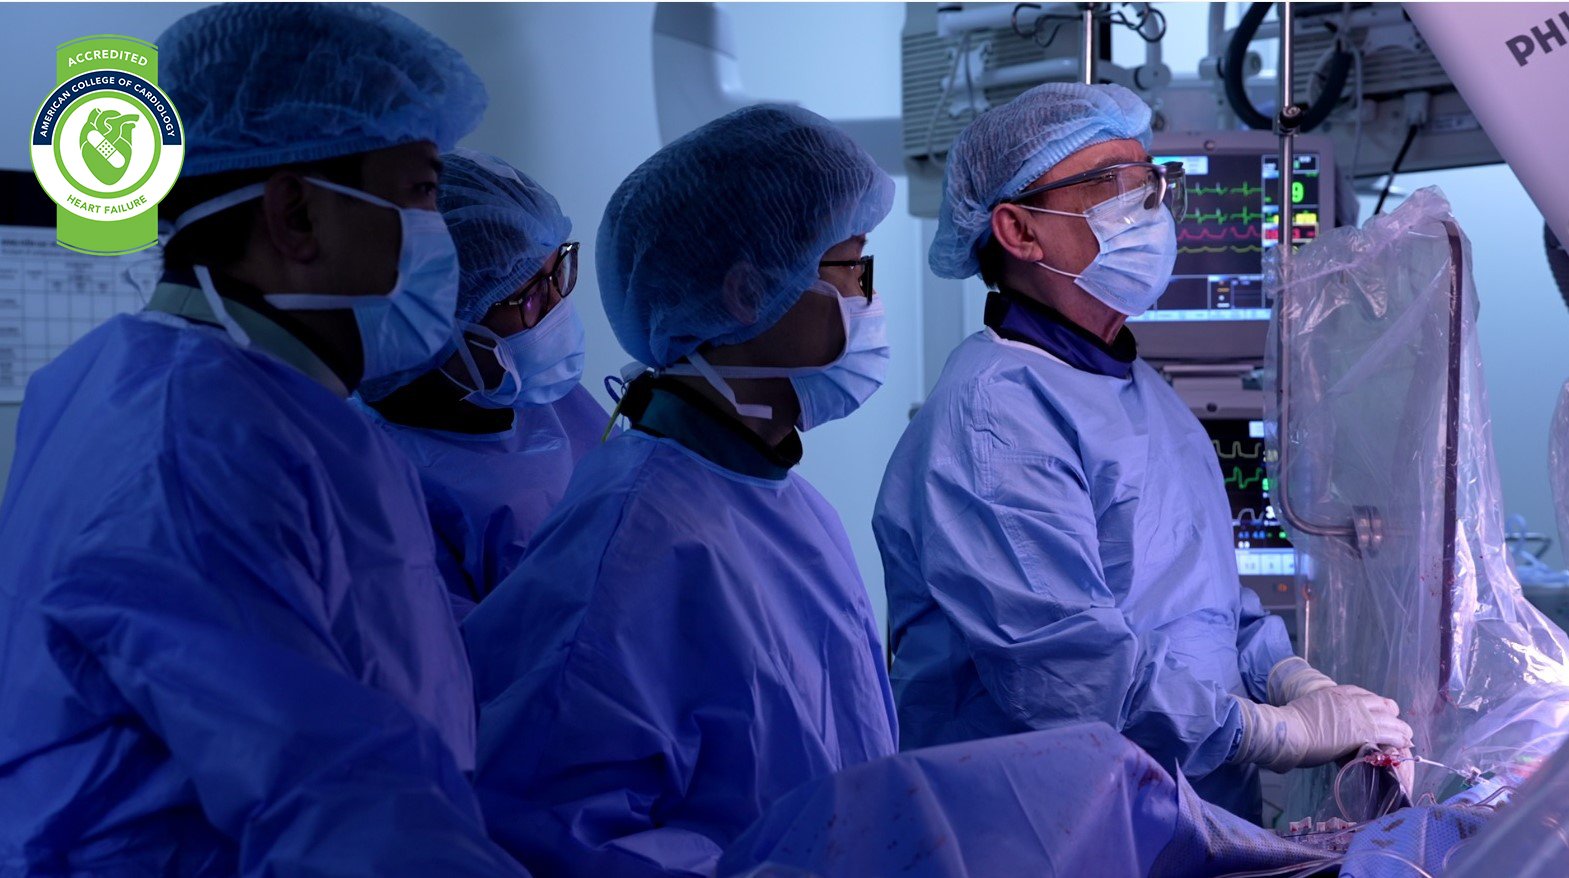 Vinmec quy tụ các chuyên gia giàu kinh nghiệm về can thiệp và phẫu thuật tim mạch, đi đầu trong ứng dụng kỹ thuật và công nghệ tiên tiến tại Việt Nam